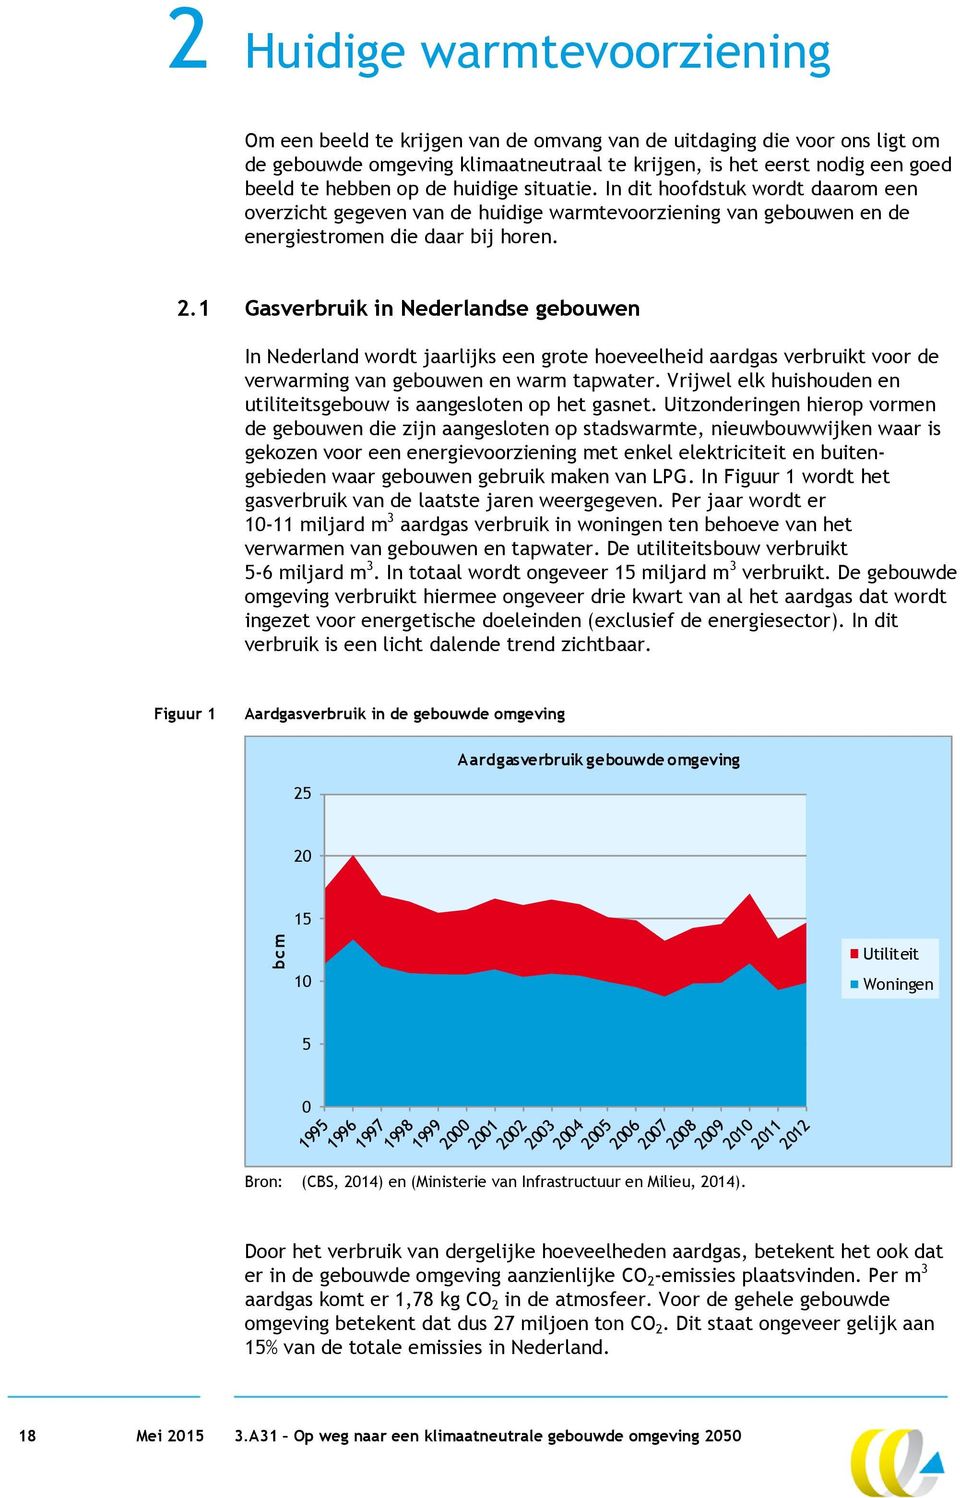 1 Gasverbruik in Nederlandse gebouwen In Nederland wordt jaarlijks een grote hoeveelheid aardgas verbruikt voor de verwarming van gebouwen en warm tapwater.